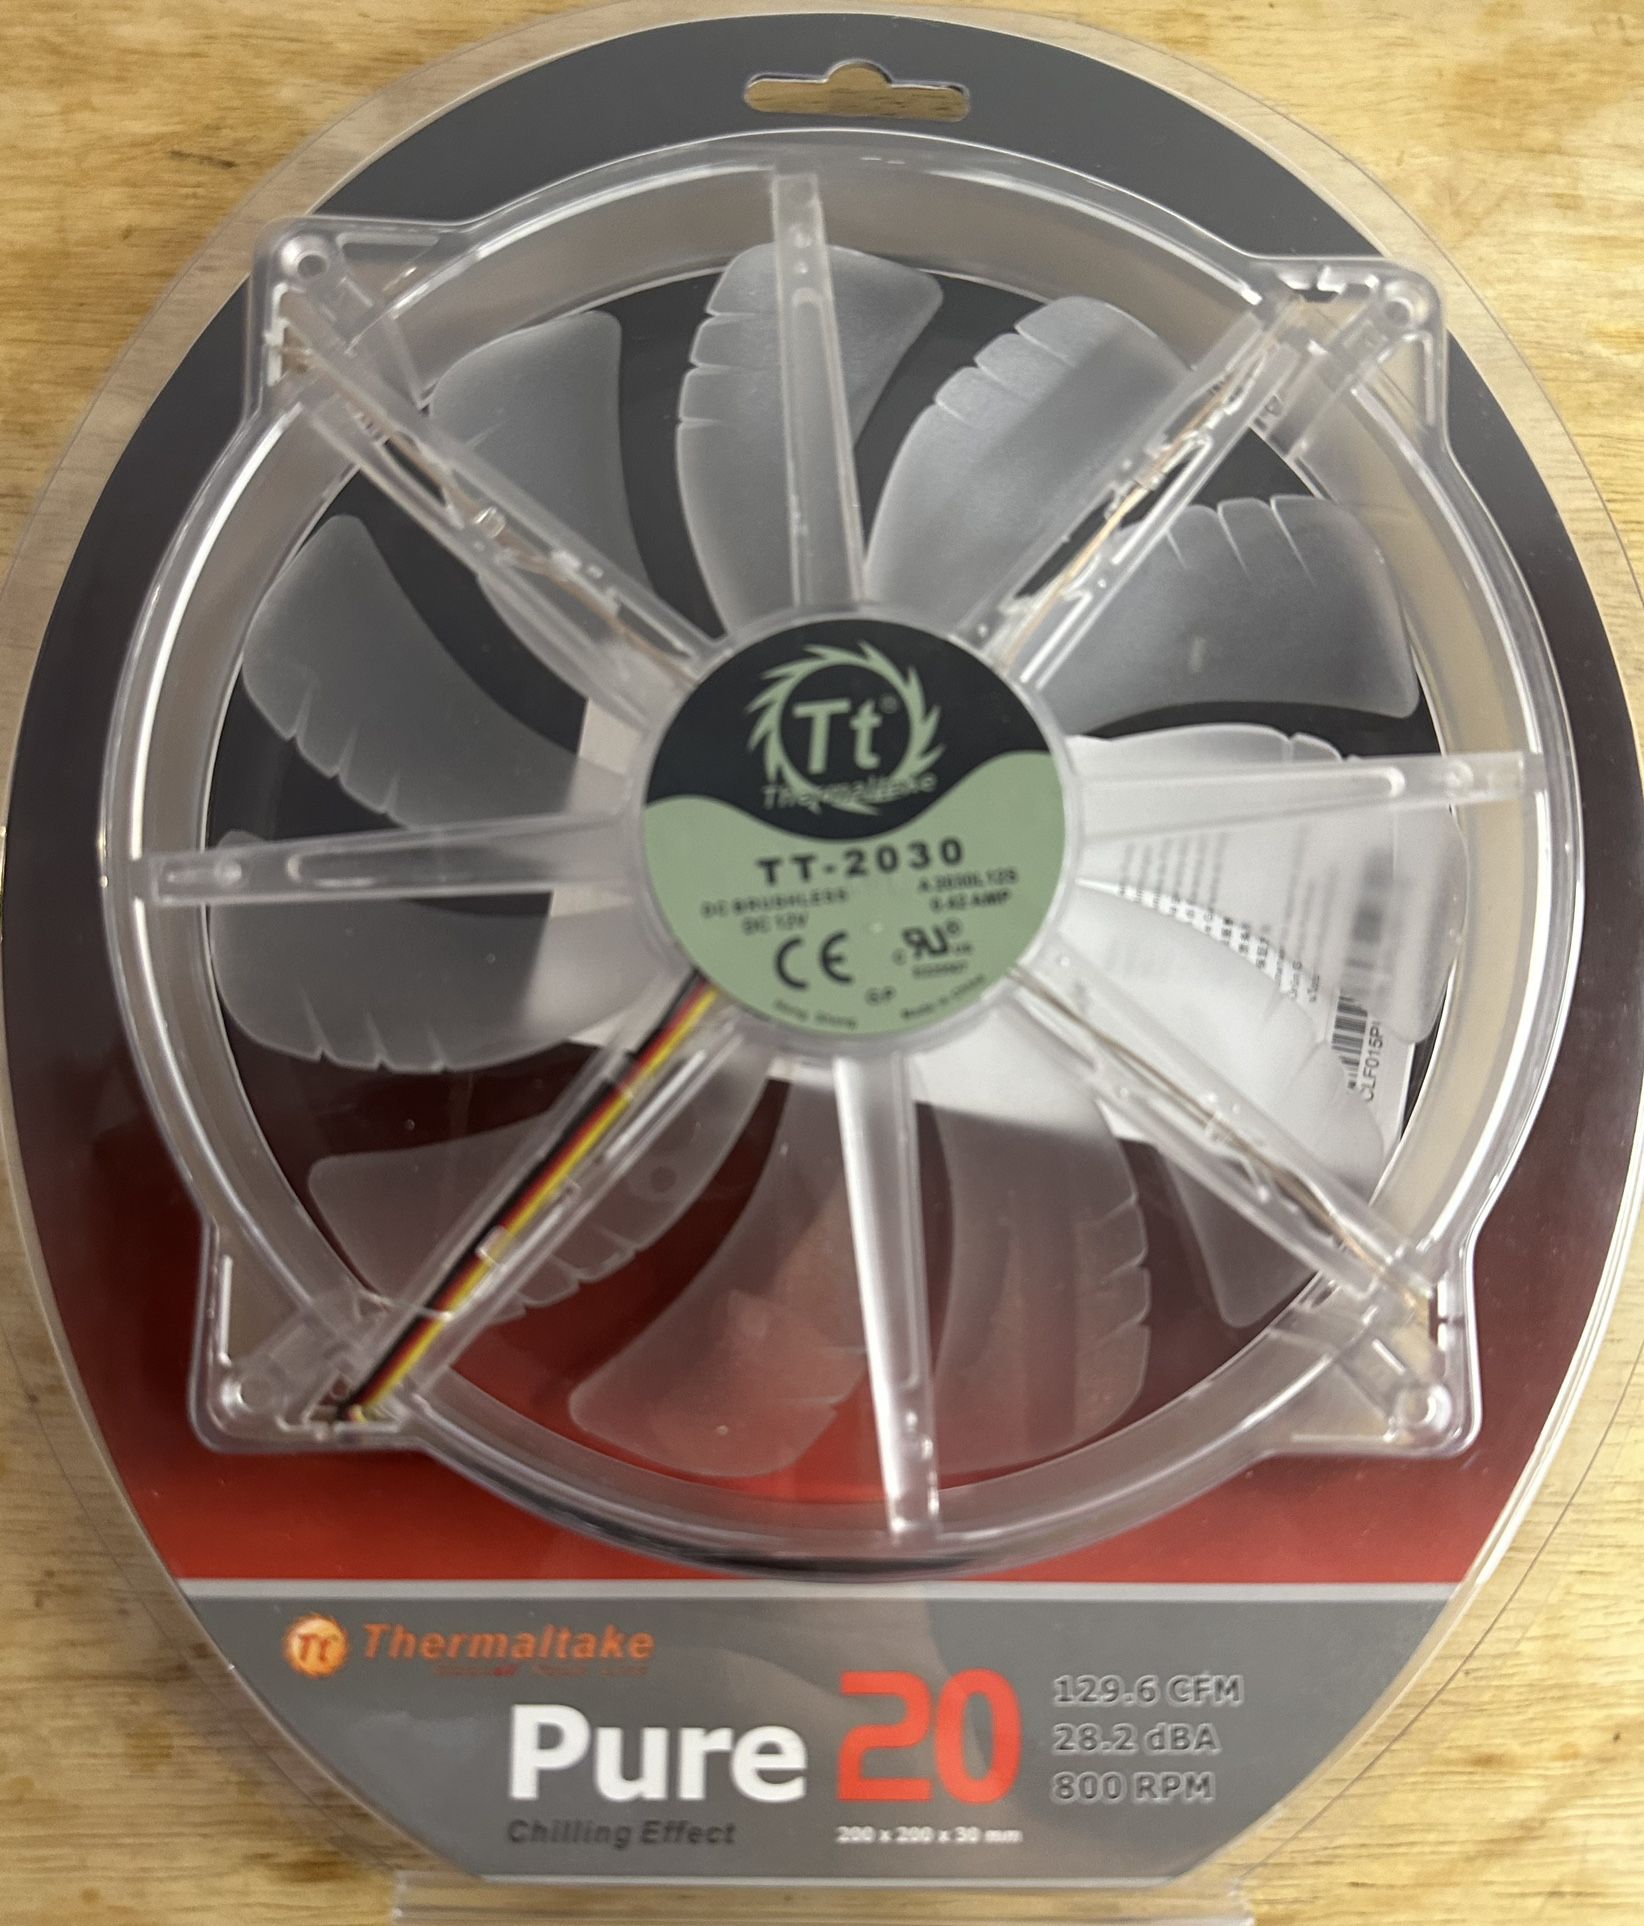 Thermaltake TT-2030 High Airflow Case Fan